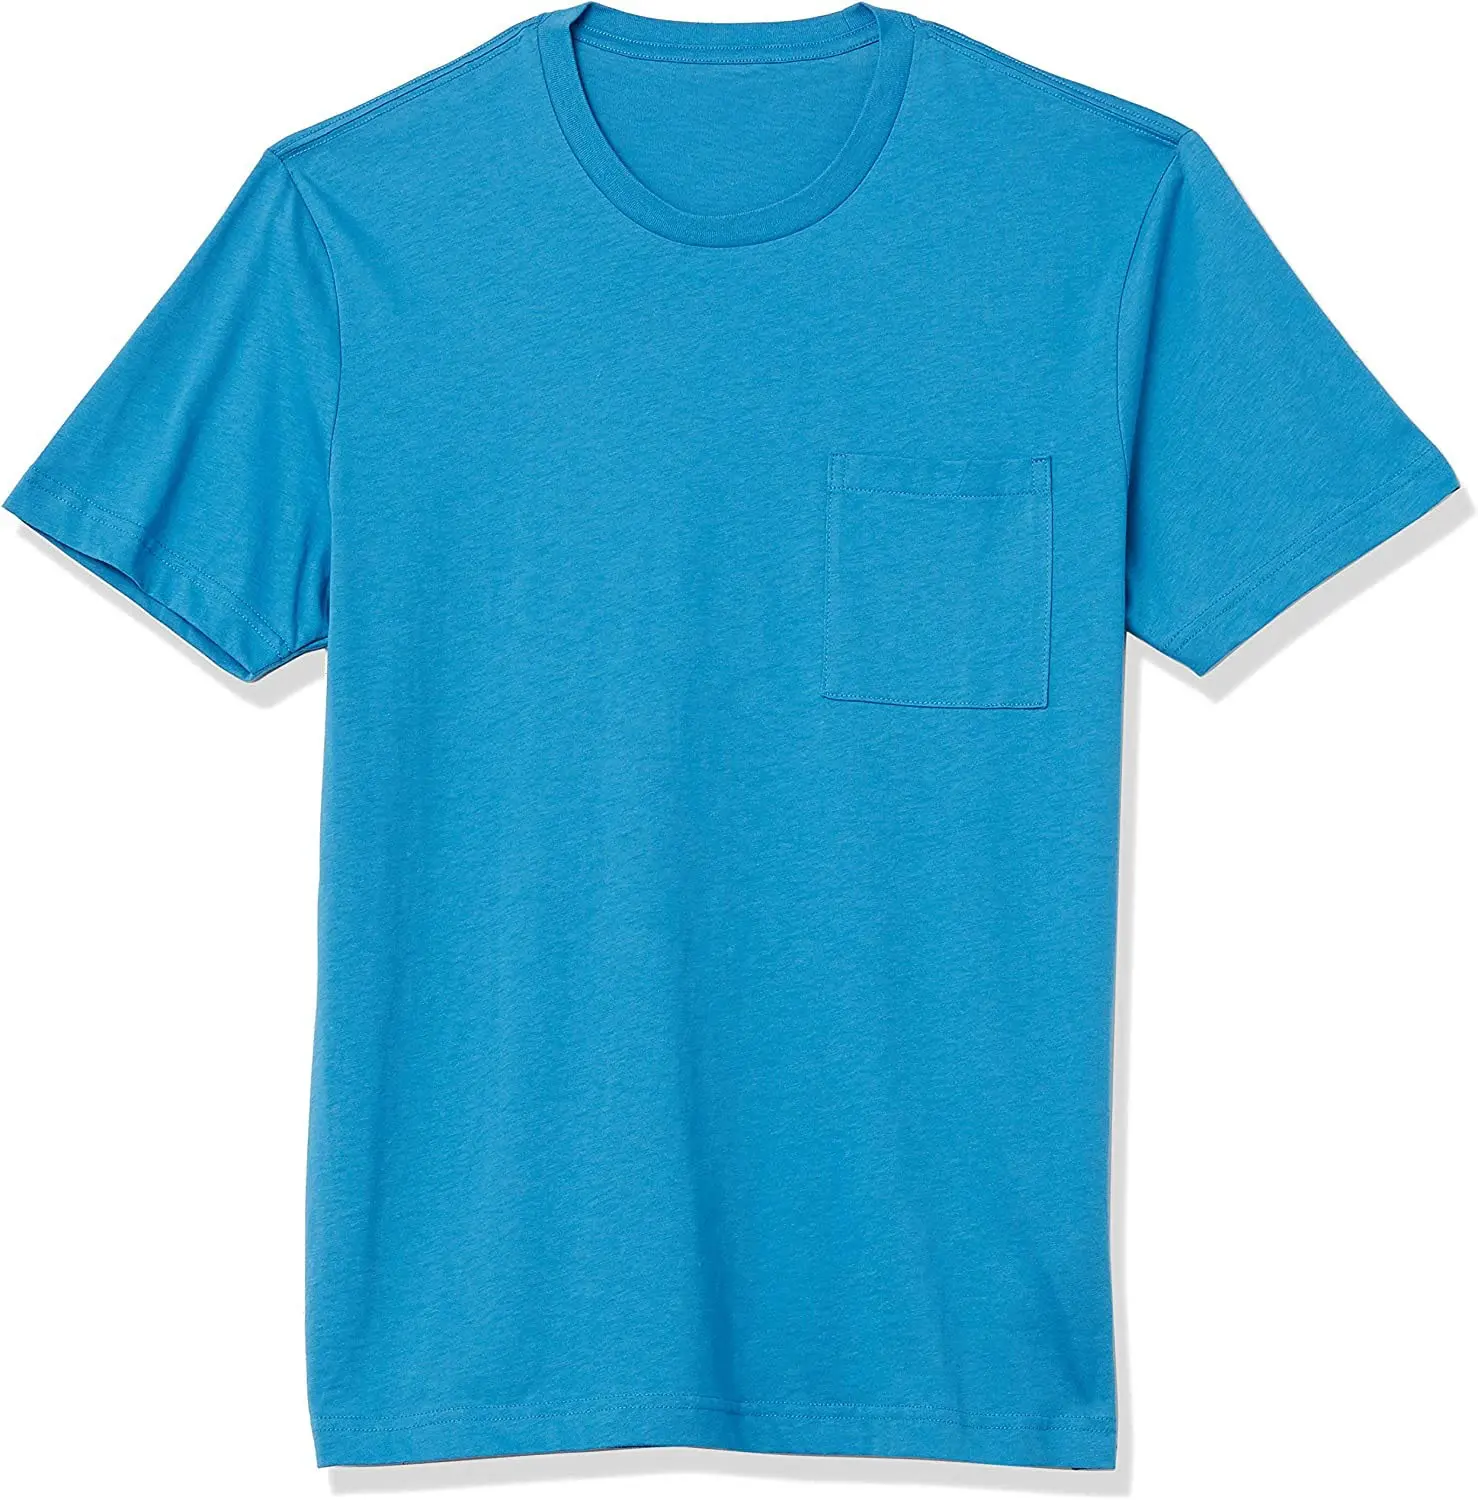 Kaus biru harga grosir pakaian pria desain kustom kaus fashion baju kaus jejak kaus hoodie setelan keringat